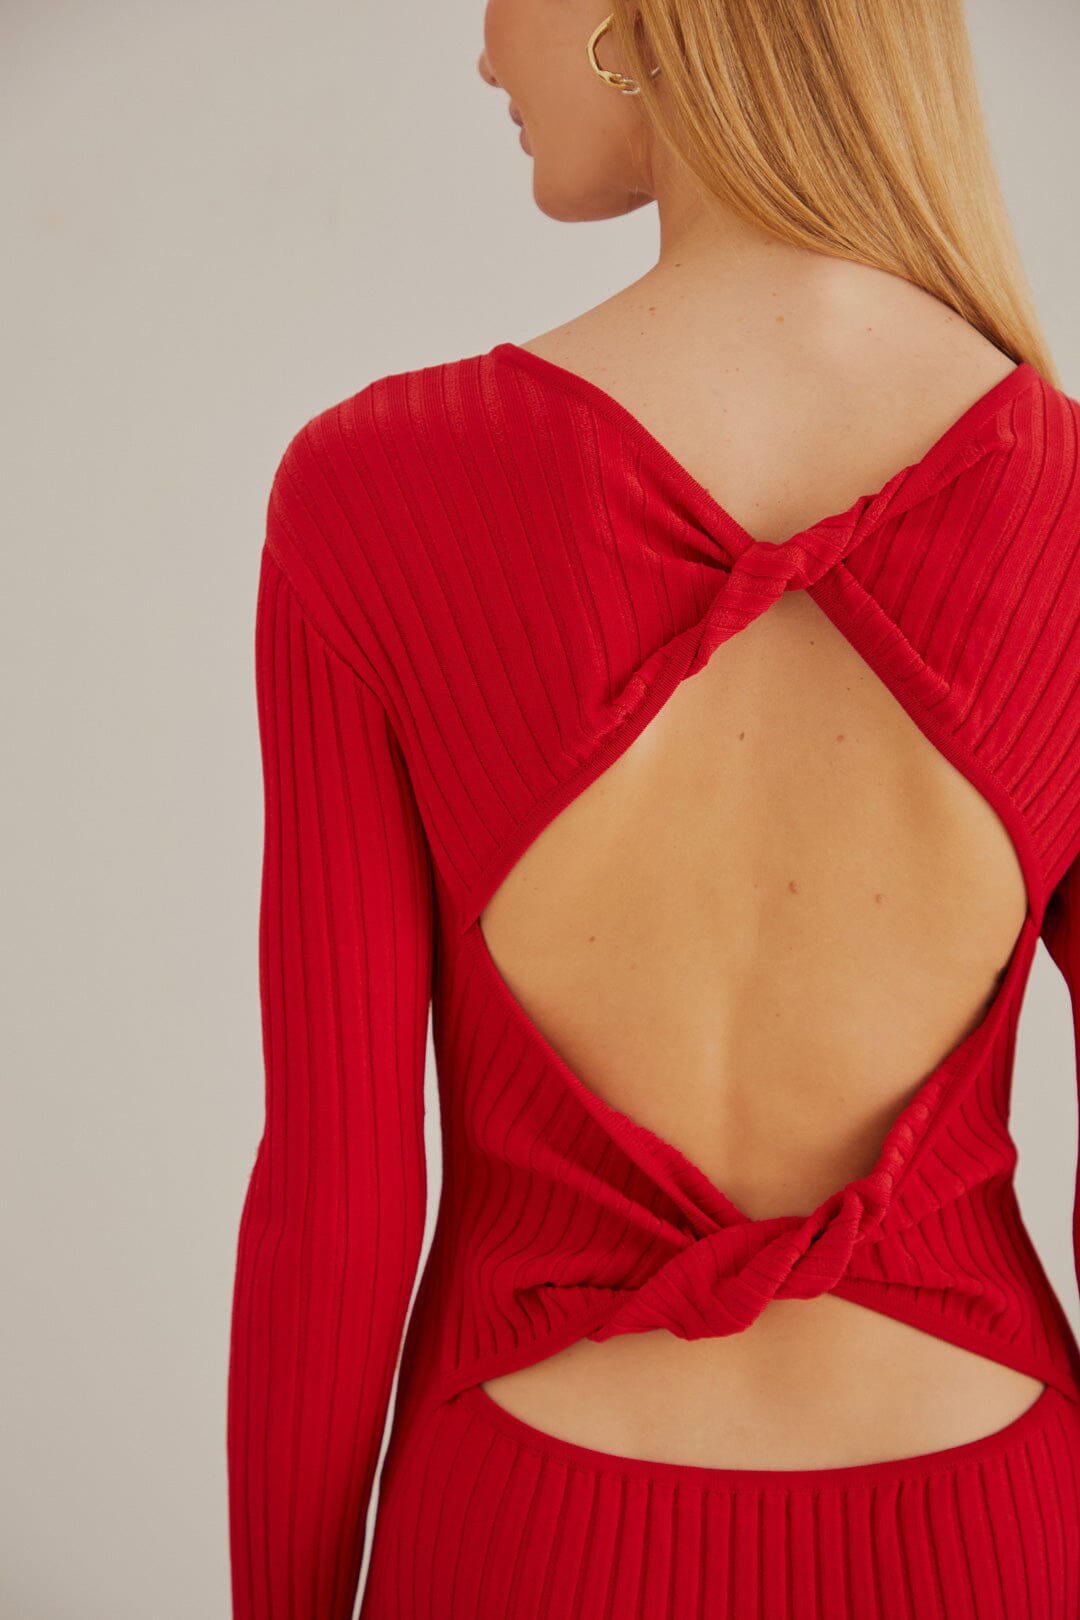 Red Knit Midi Dress